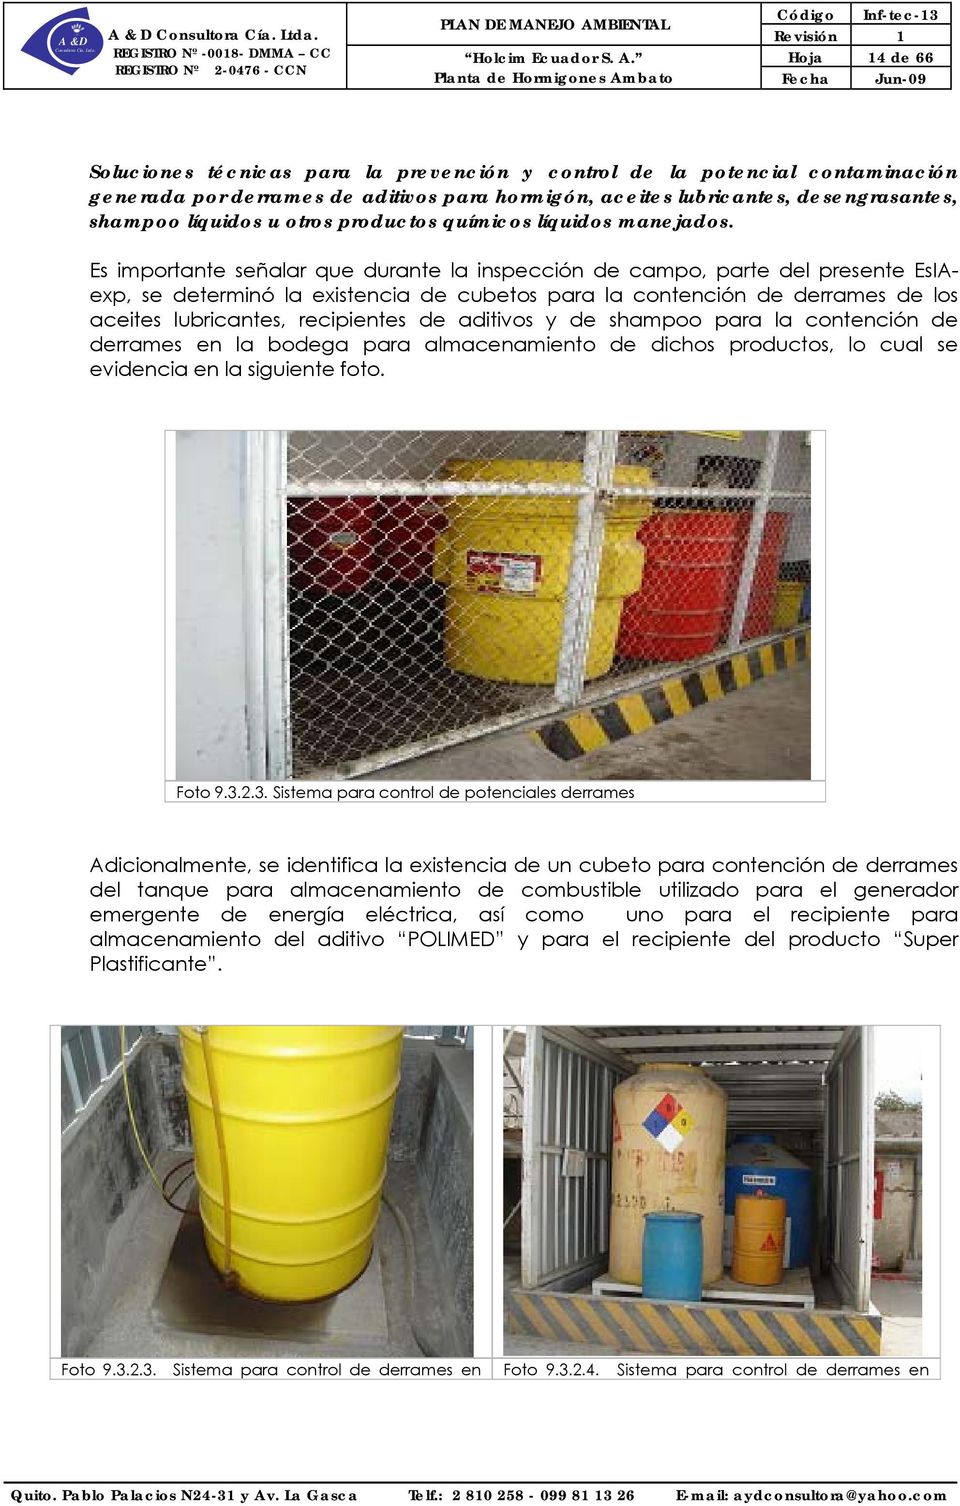 Es importante señalar que durante la inspección de campo, parte del presente EsIAexp, se determinó la existencia de cubetos para la contención de derrames de los aceites lubricantes, recipientes de